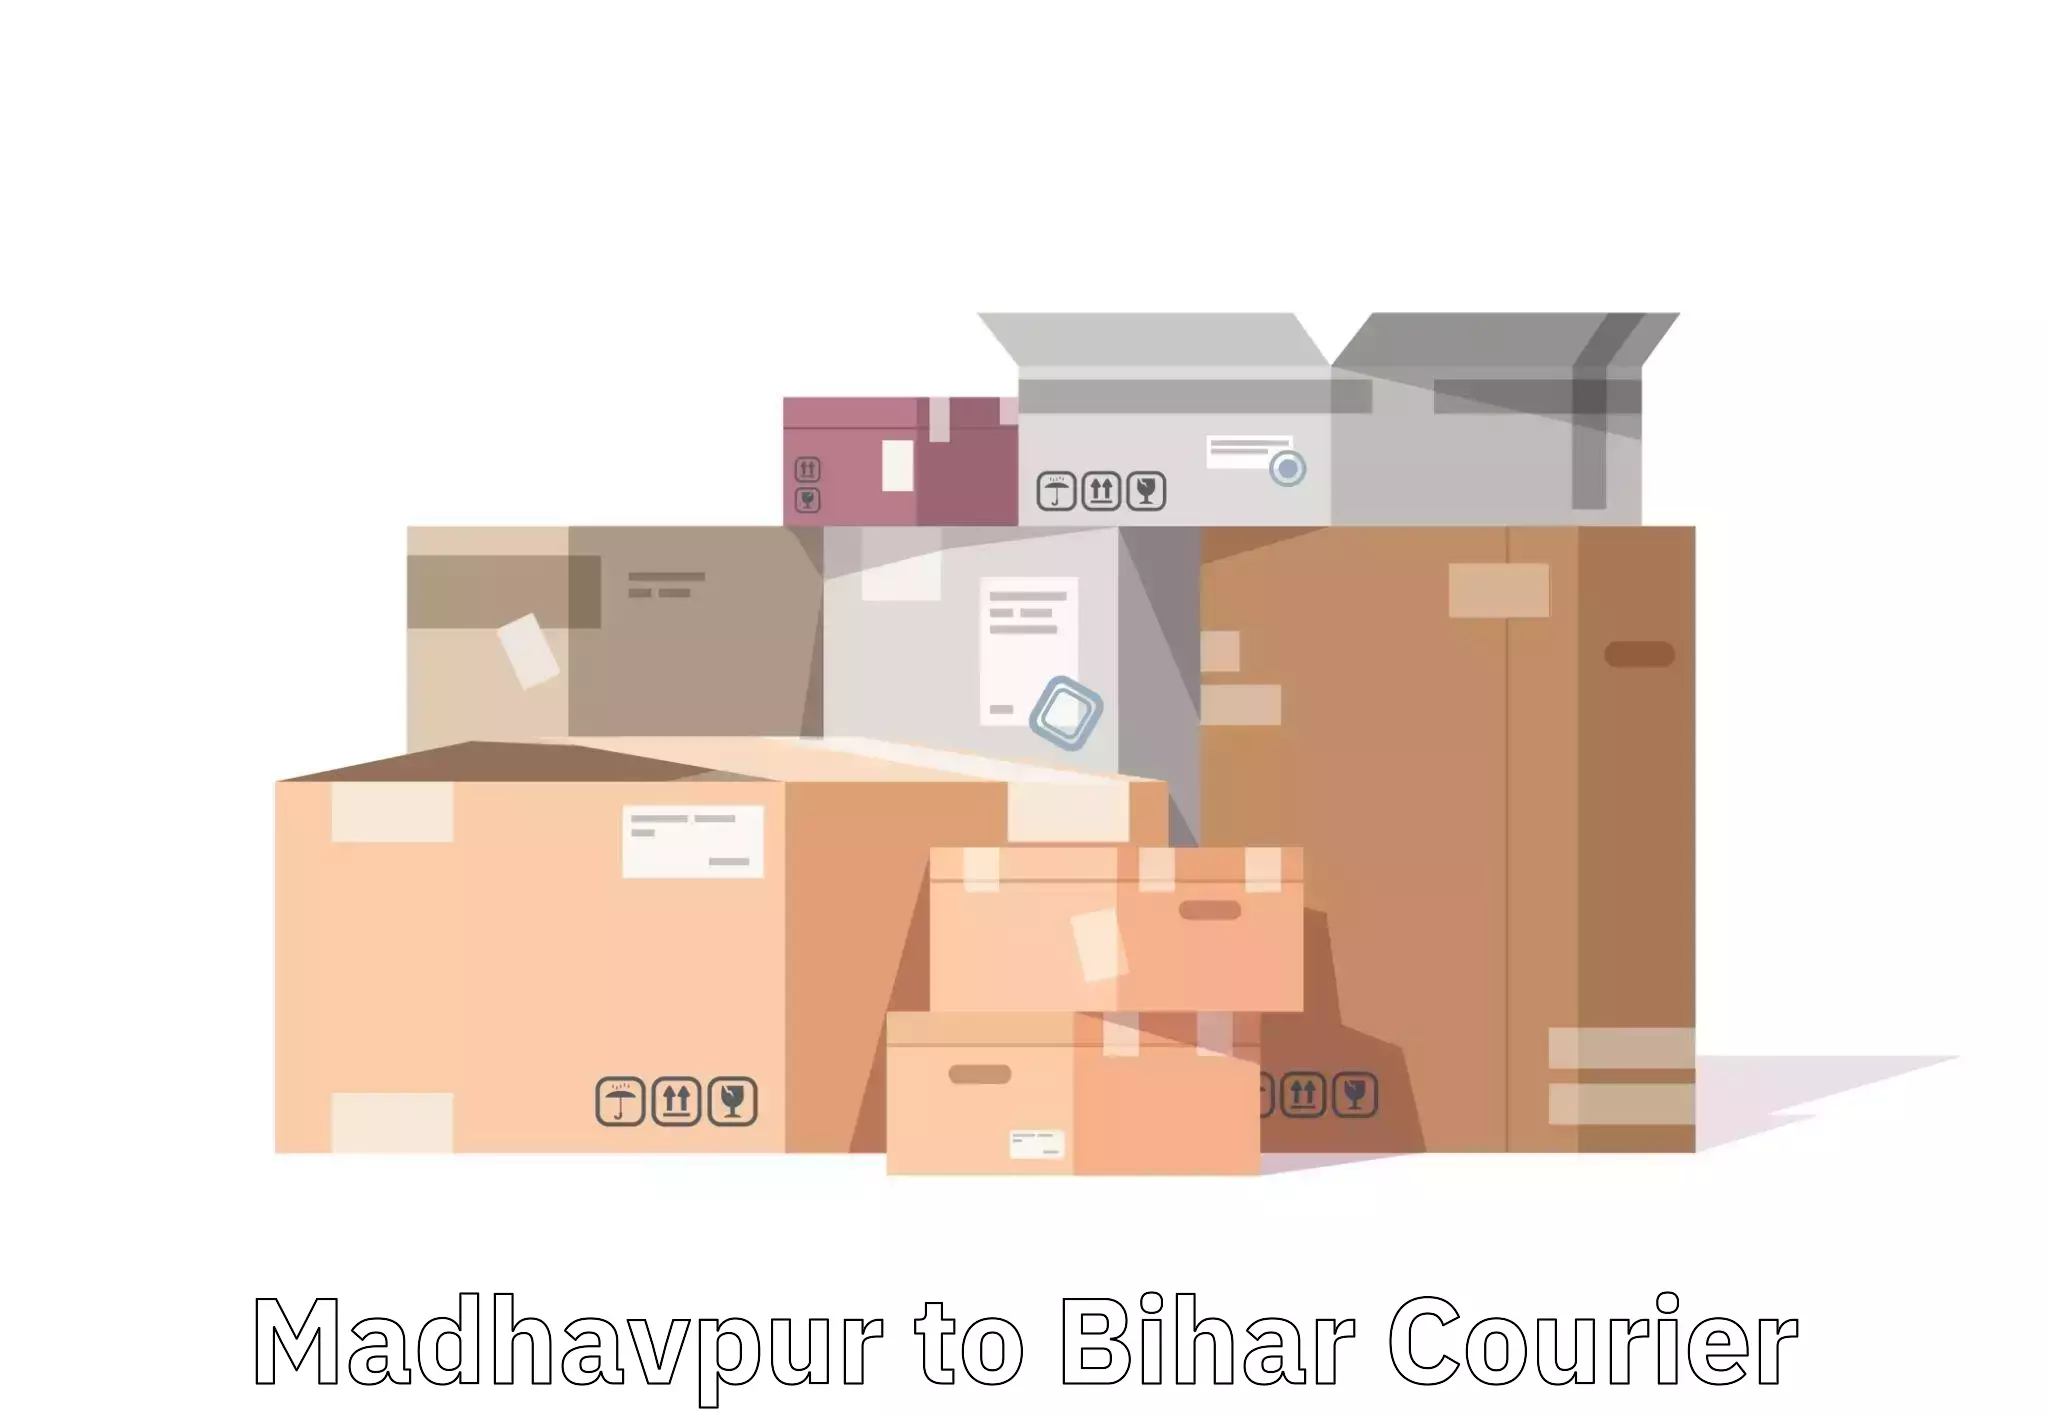 Door-to-door baggage service Madhavpur to Danapur